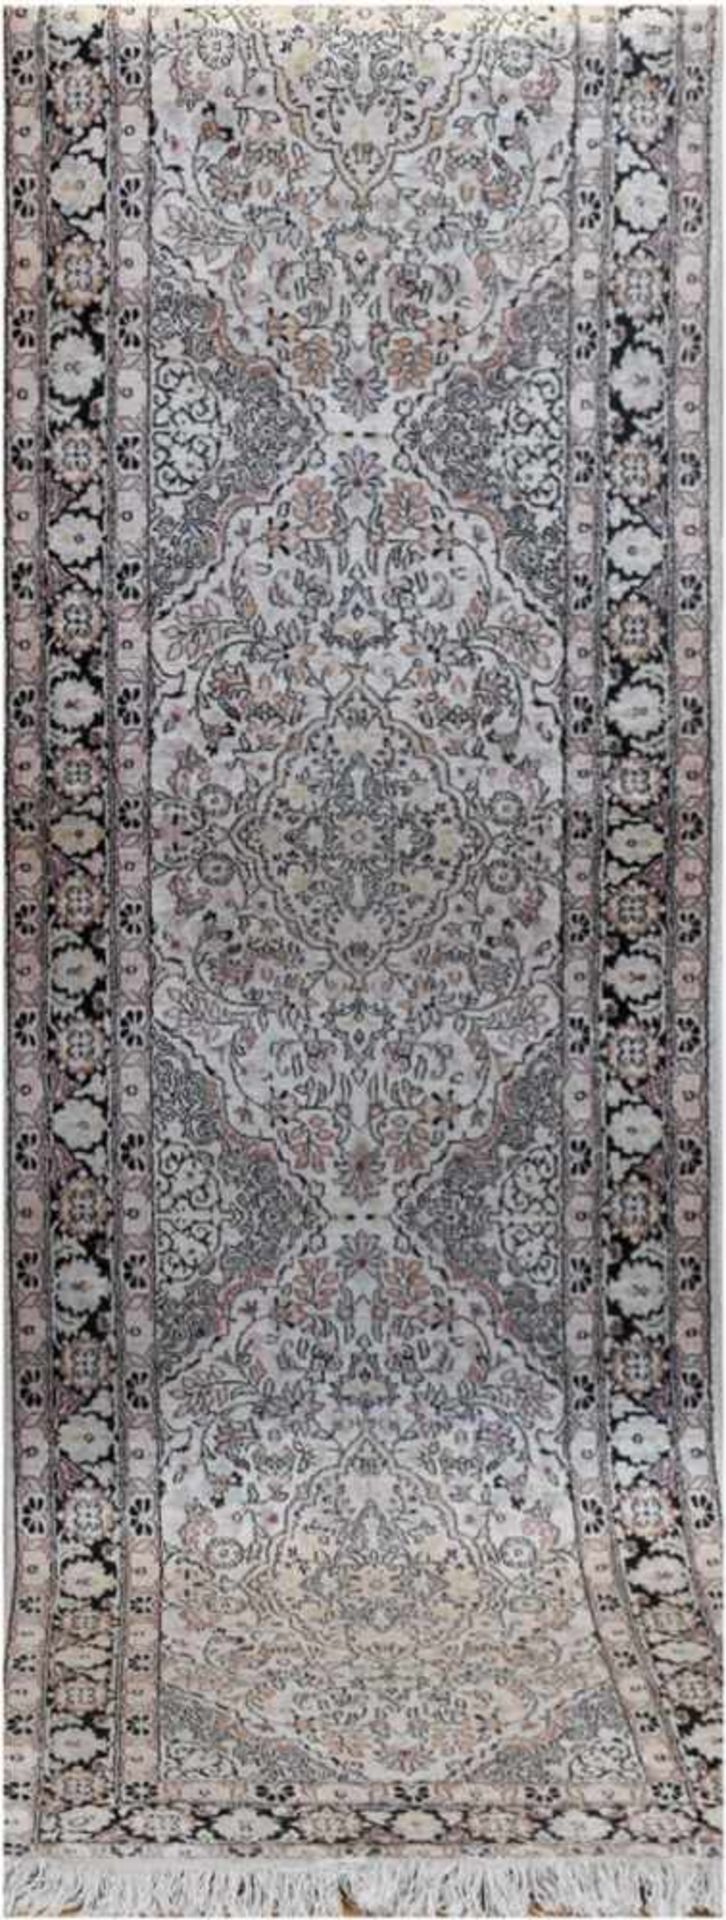 Kaschmir, hellgrundig, mit durchgehendem Muster und floralen Motiven, Kanten sowiestellenweise